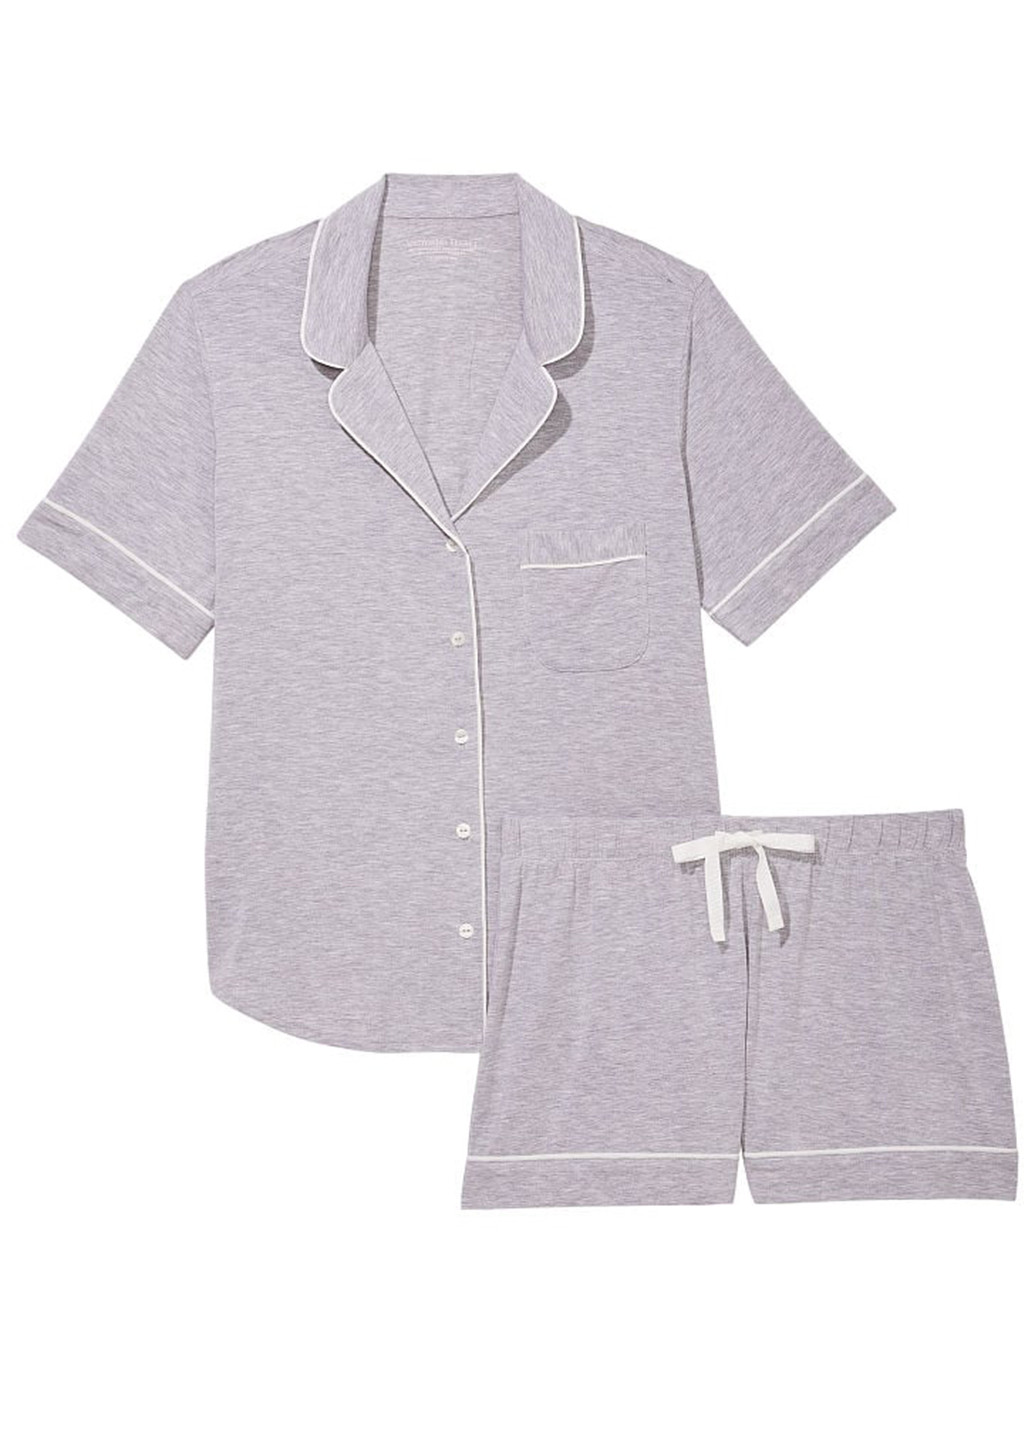 Серая всесезон пижама (рубашка, шорты) рубашка + шорты Victoria's Secret